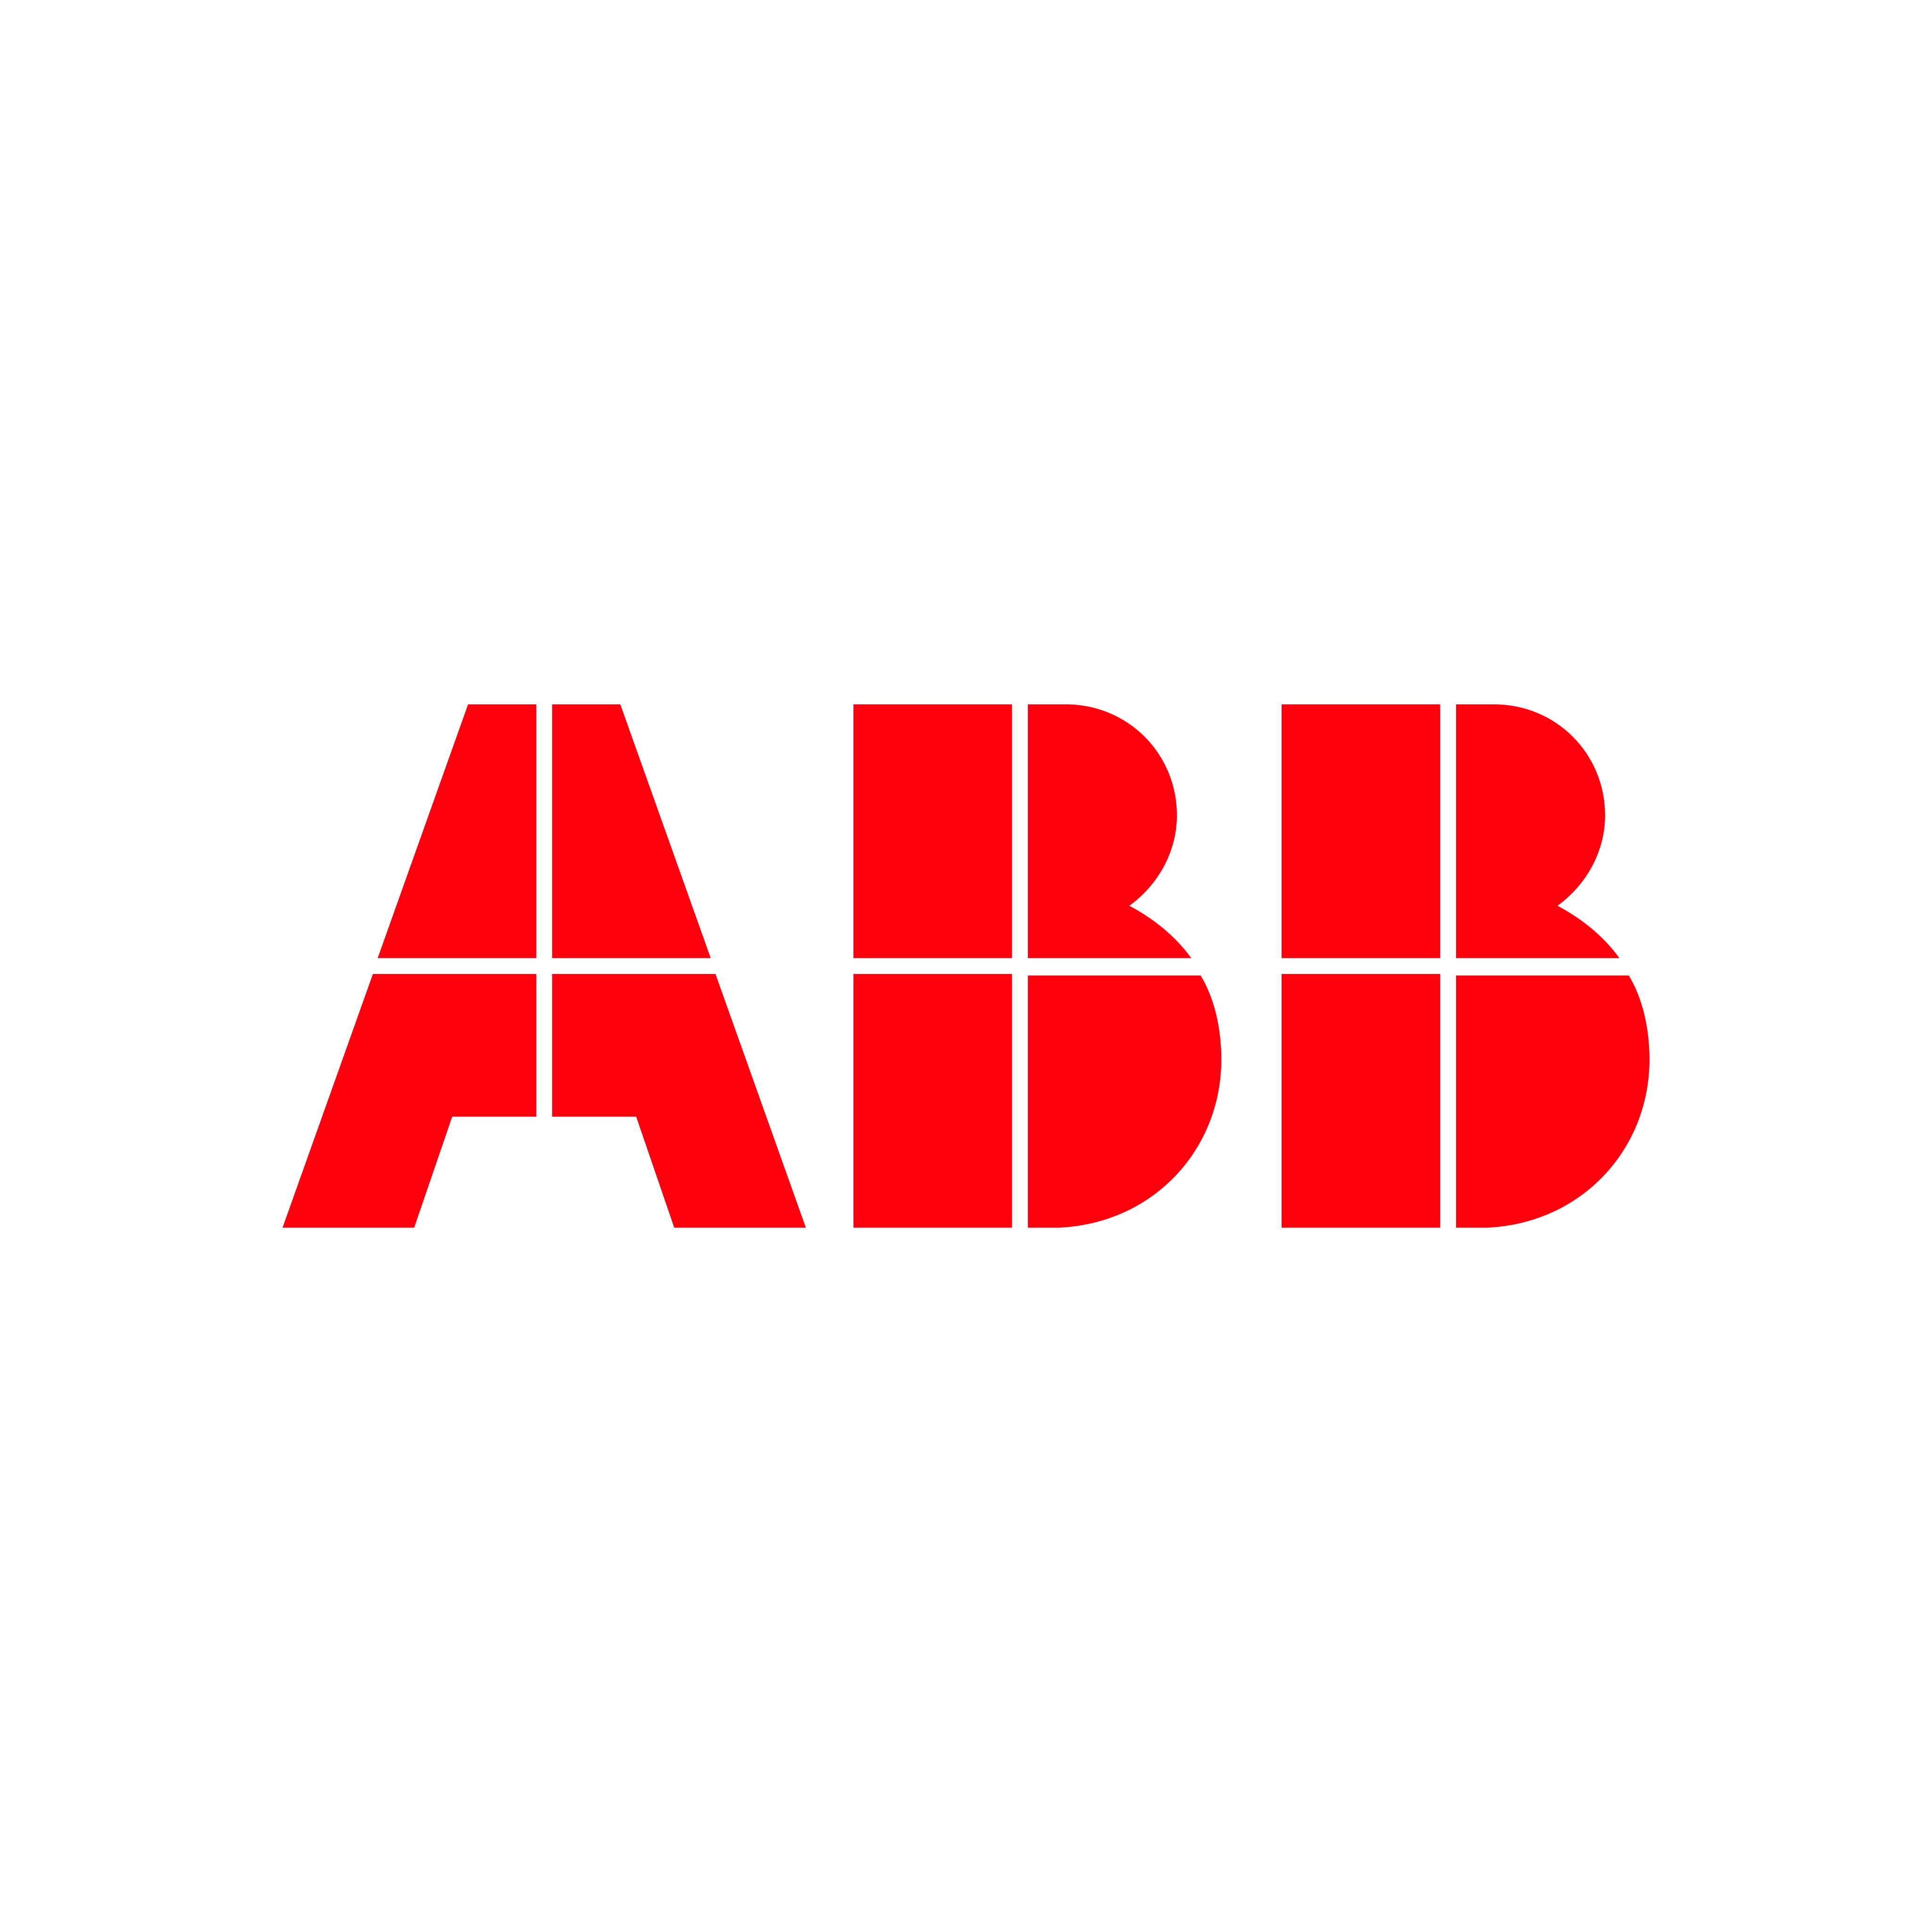 abb logo 0 - ABB Logo